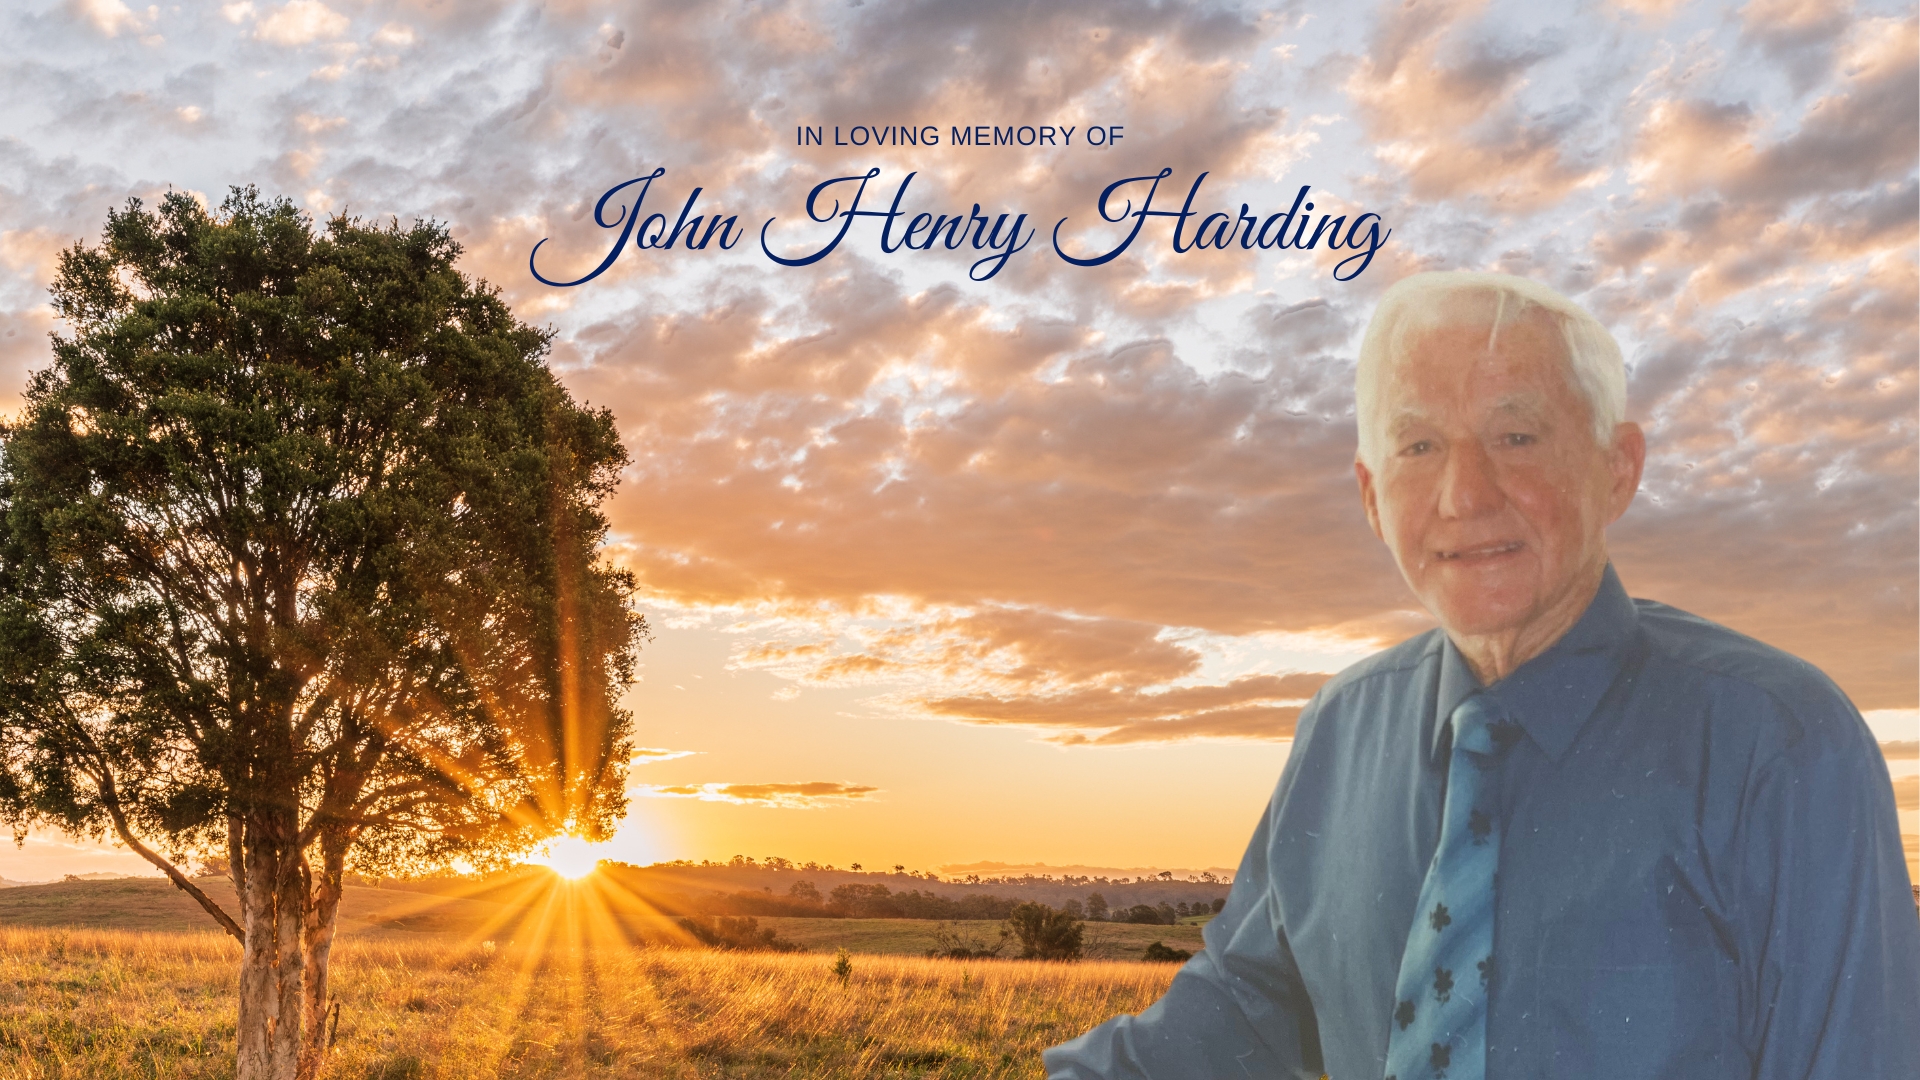 John Henry Harding